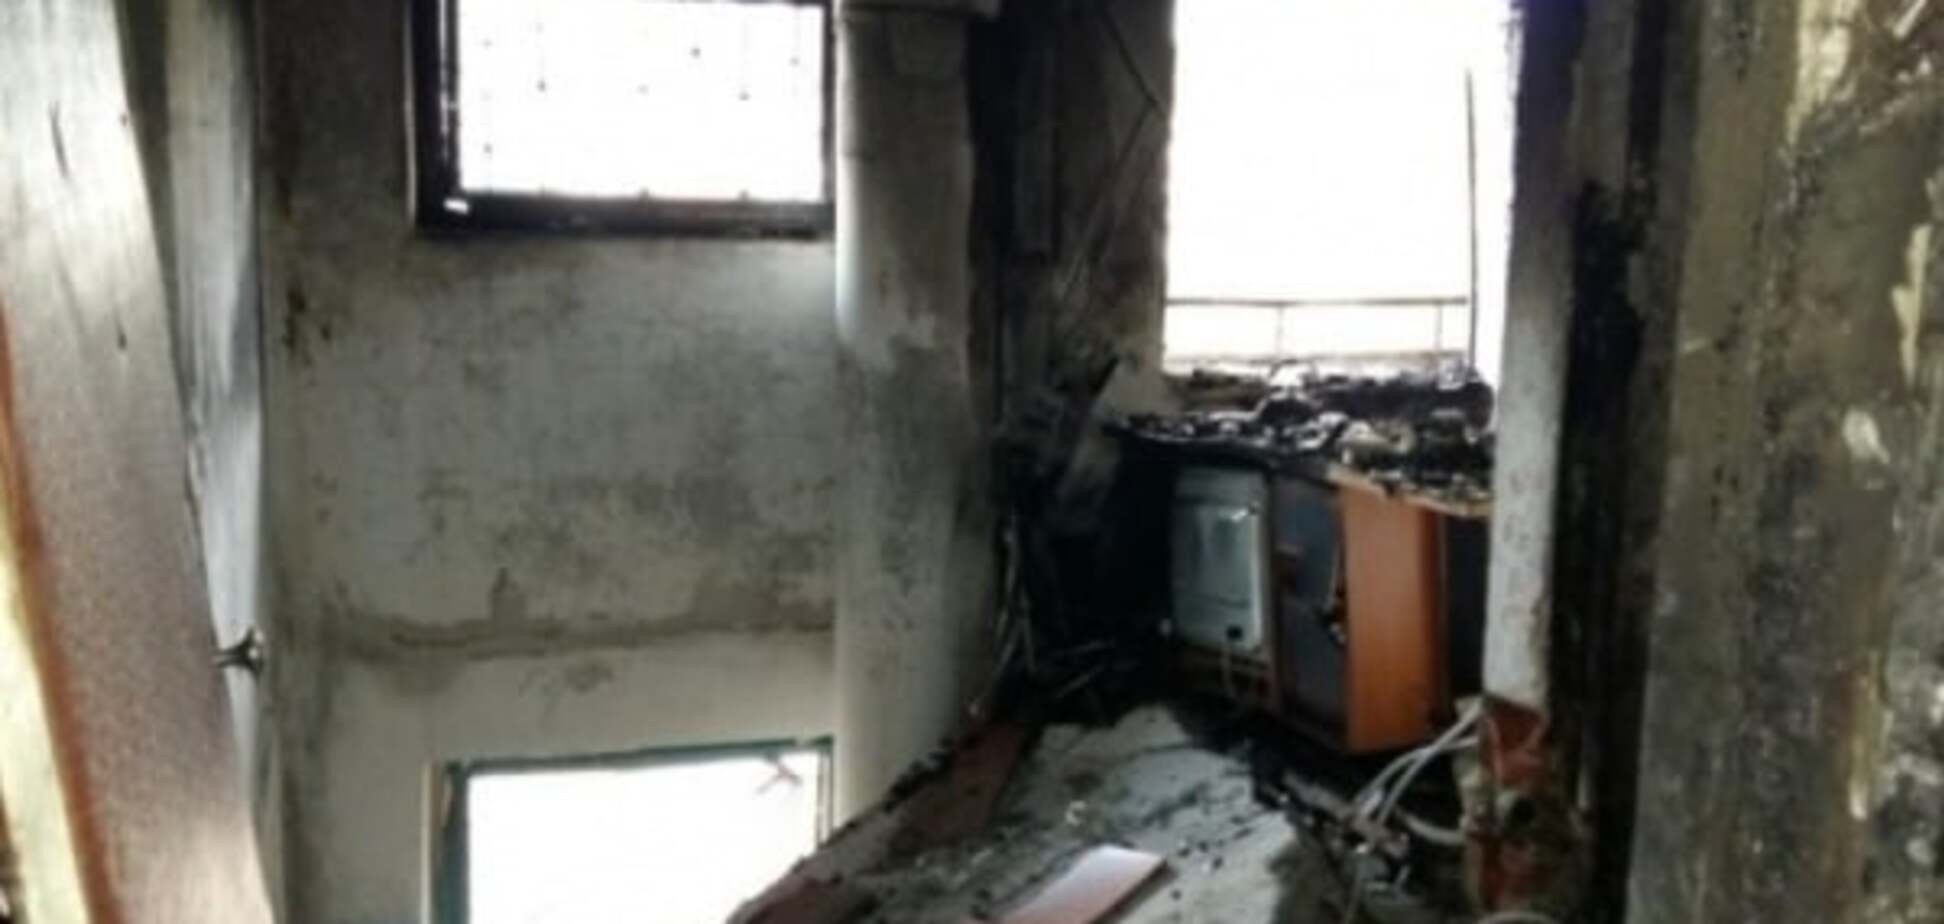 Мощный взрыв в многоэтажке Павлограда разрушил несколько квартир: опубликованы фото